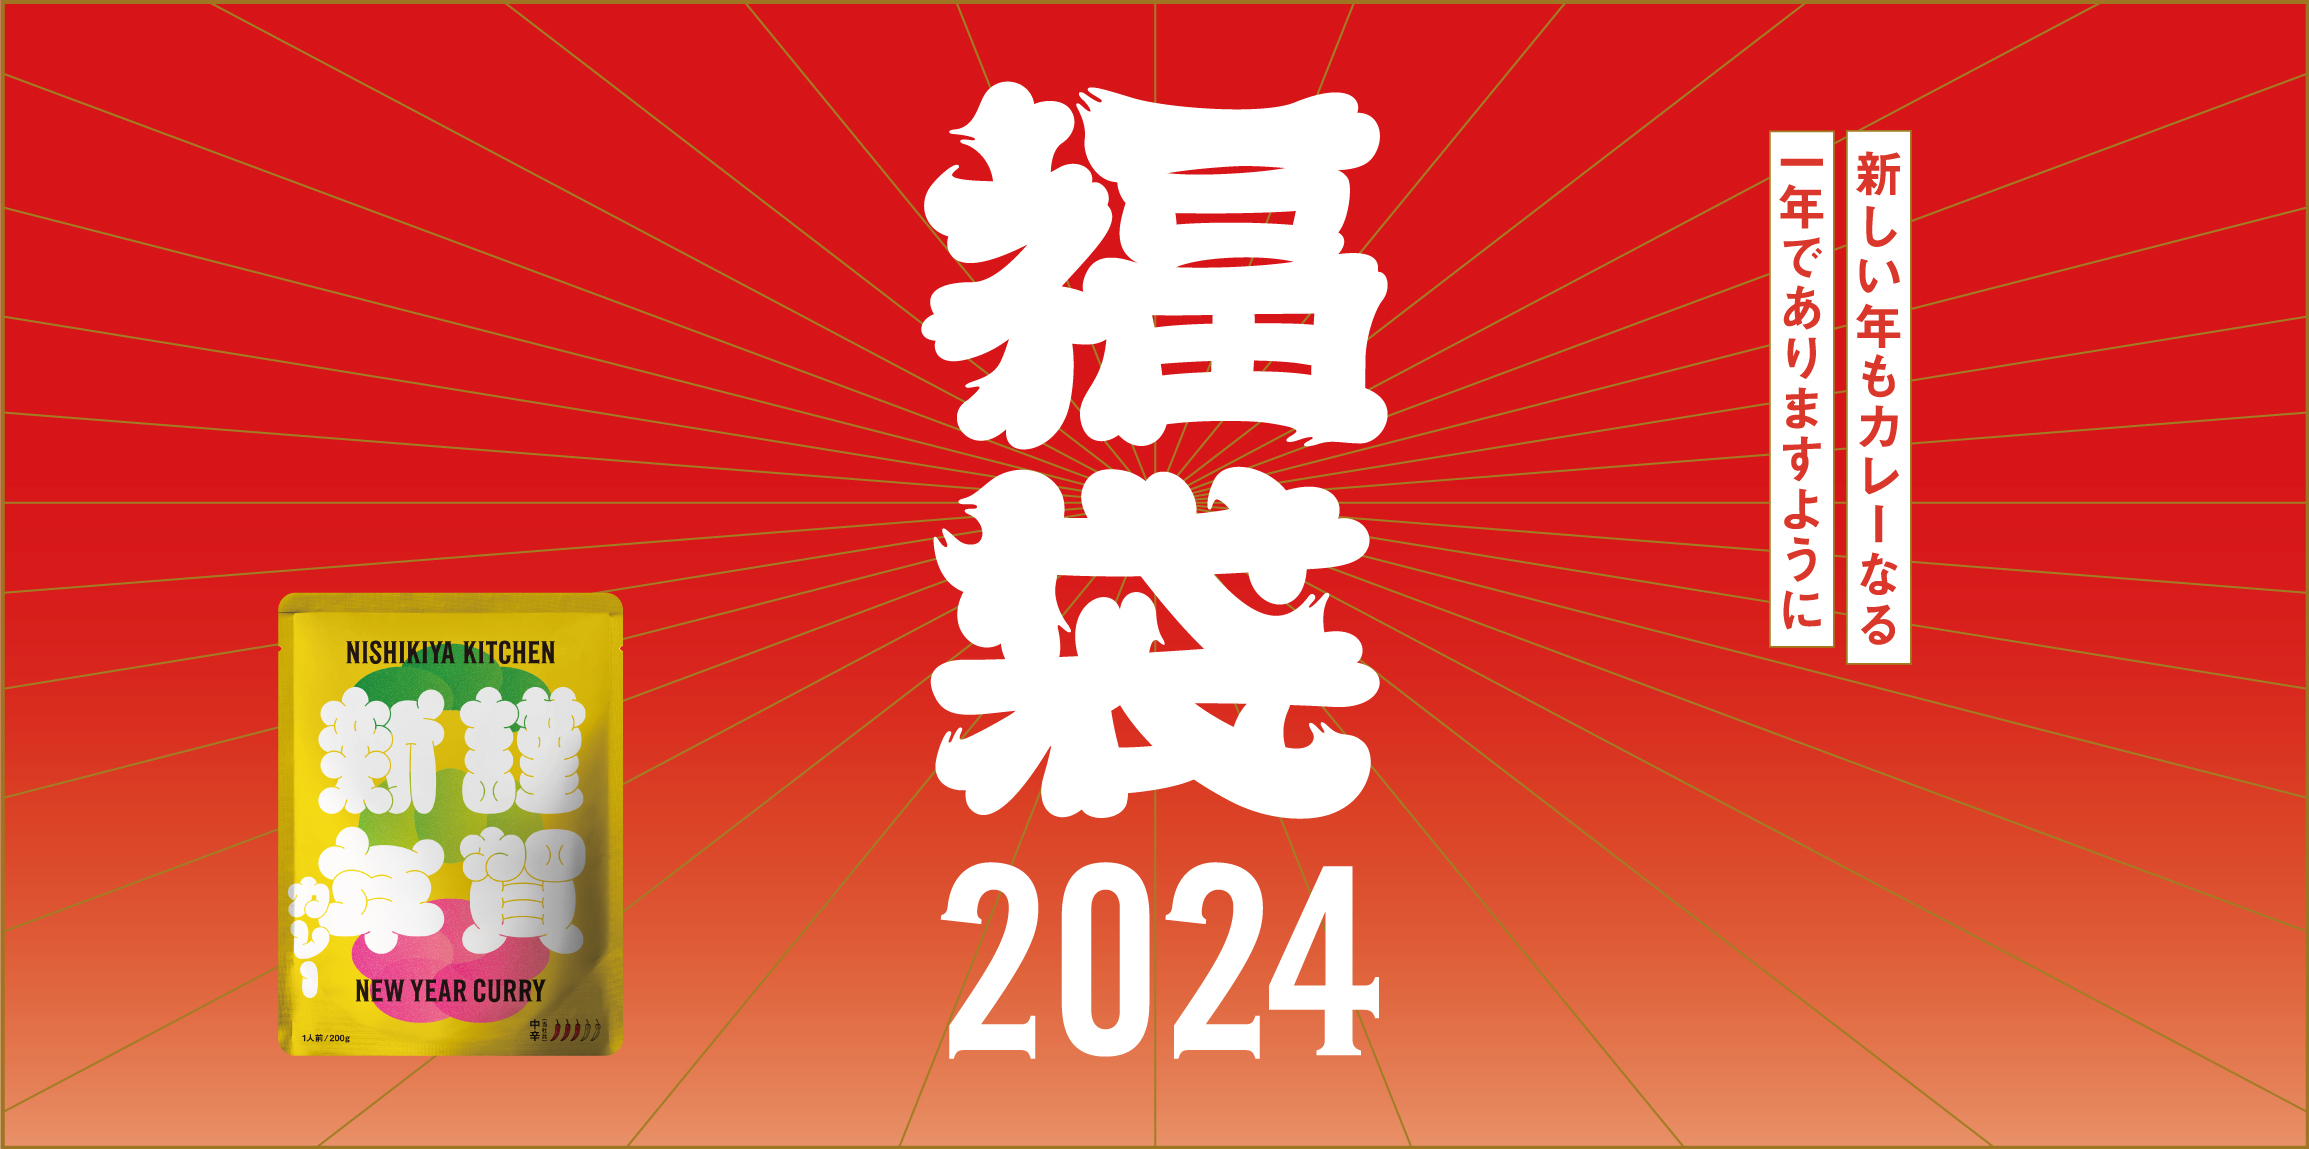 エム・トゥ・エムが「FOOD STYLE Kyushu2023」に初出展！
キビを使ったグルテンフリーカレーやVEGANカレーをご紹介